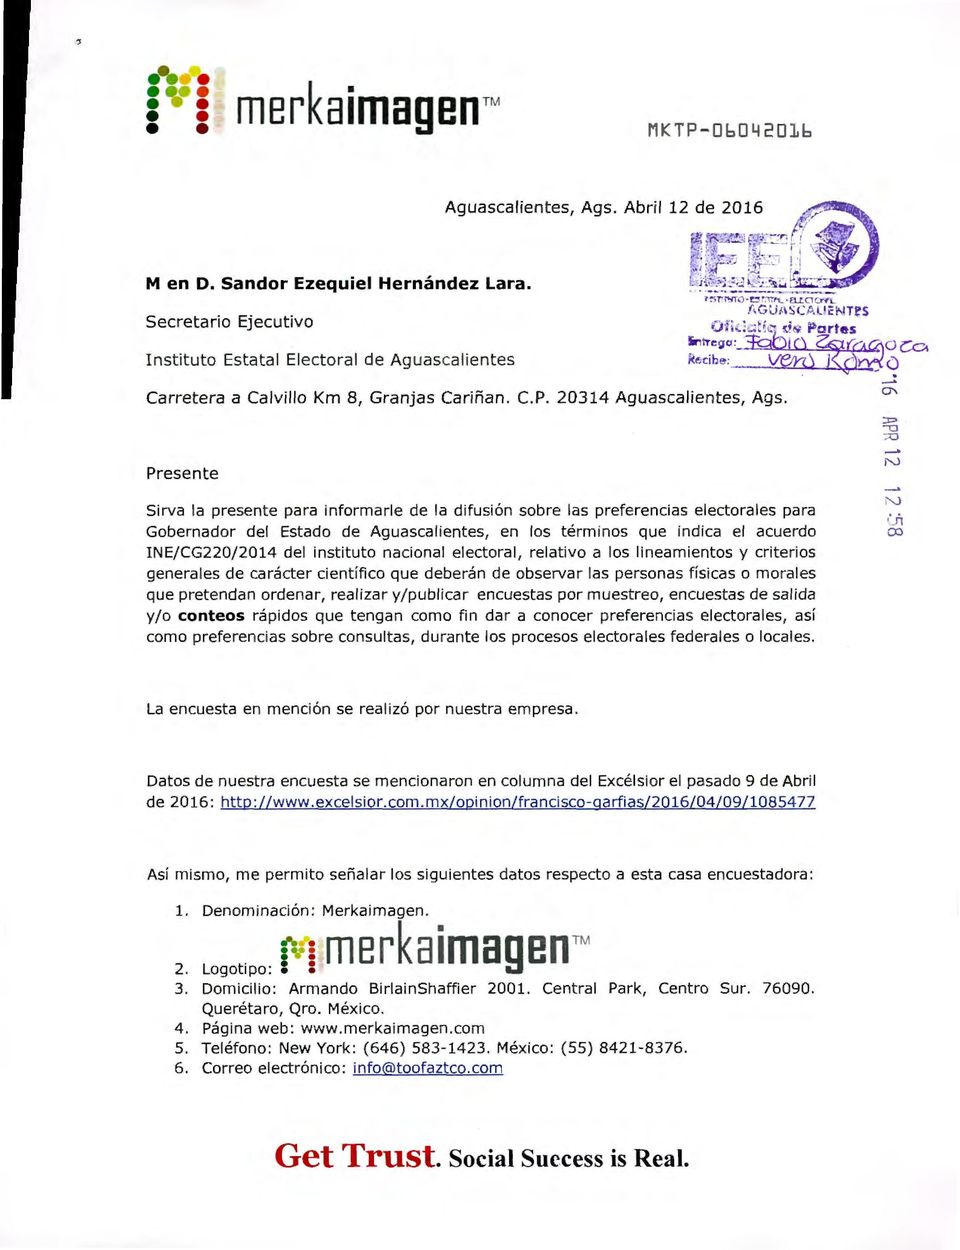 Presente N Sirva la presente para informarle de la difusión sobre las preferencias electorales para Gobernador del Estado de Aguascalientes en los términos que indica el acuerdo INE/CG220/2014 del